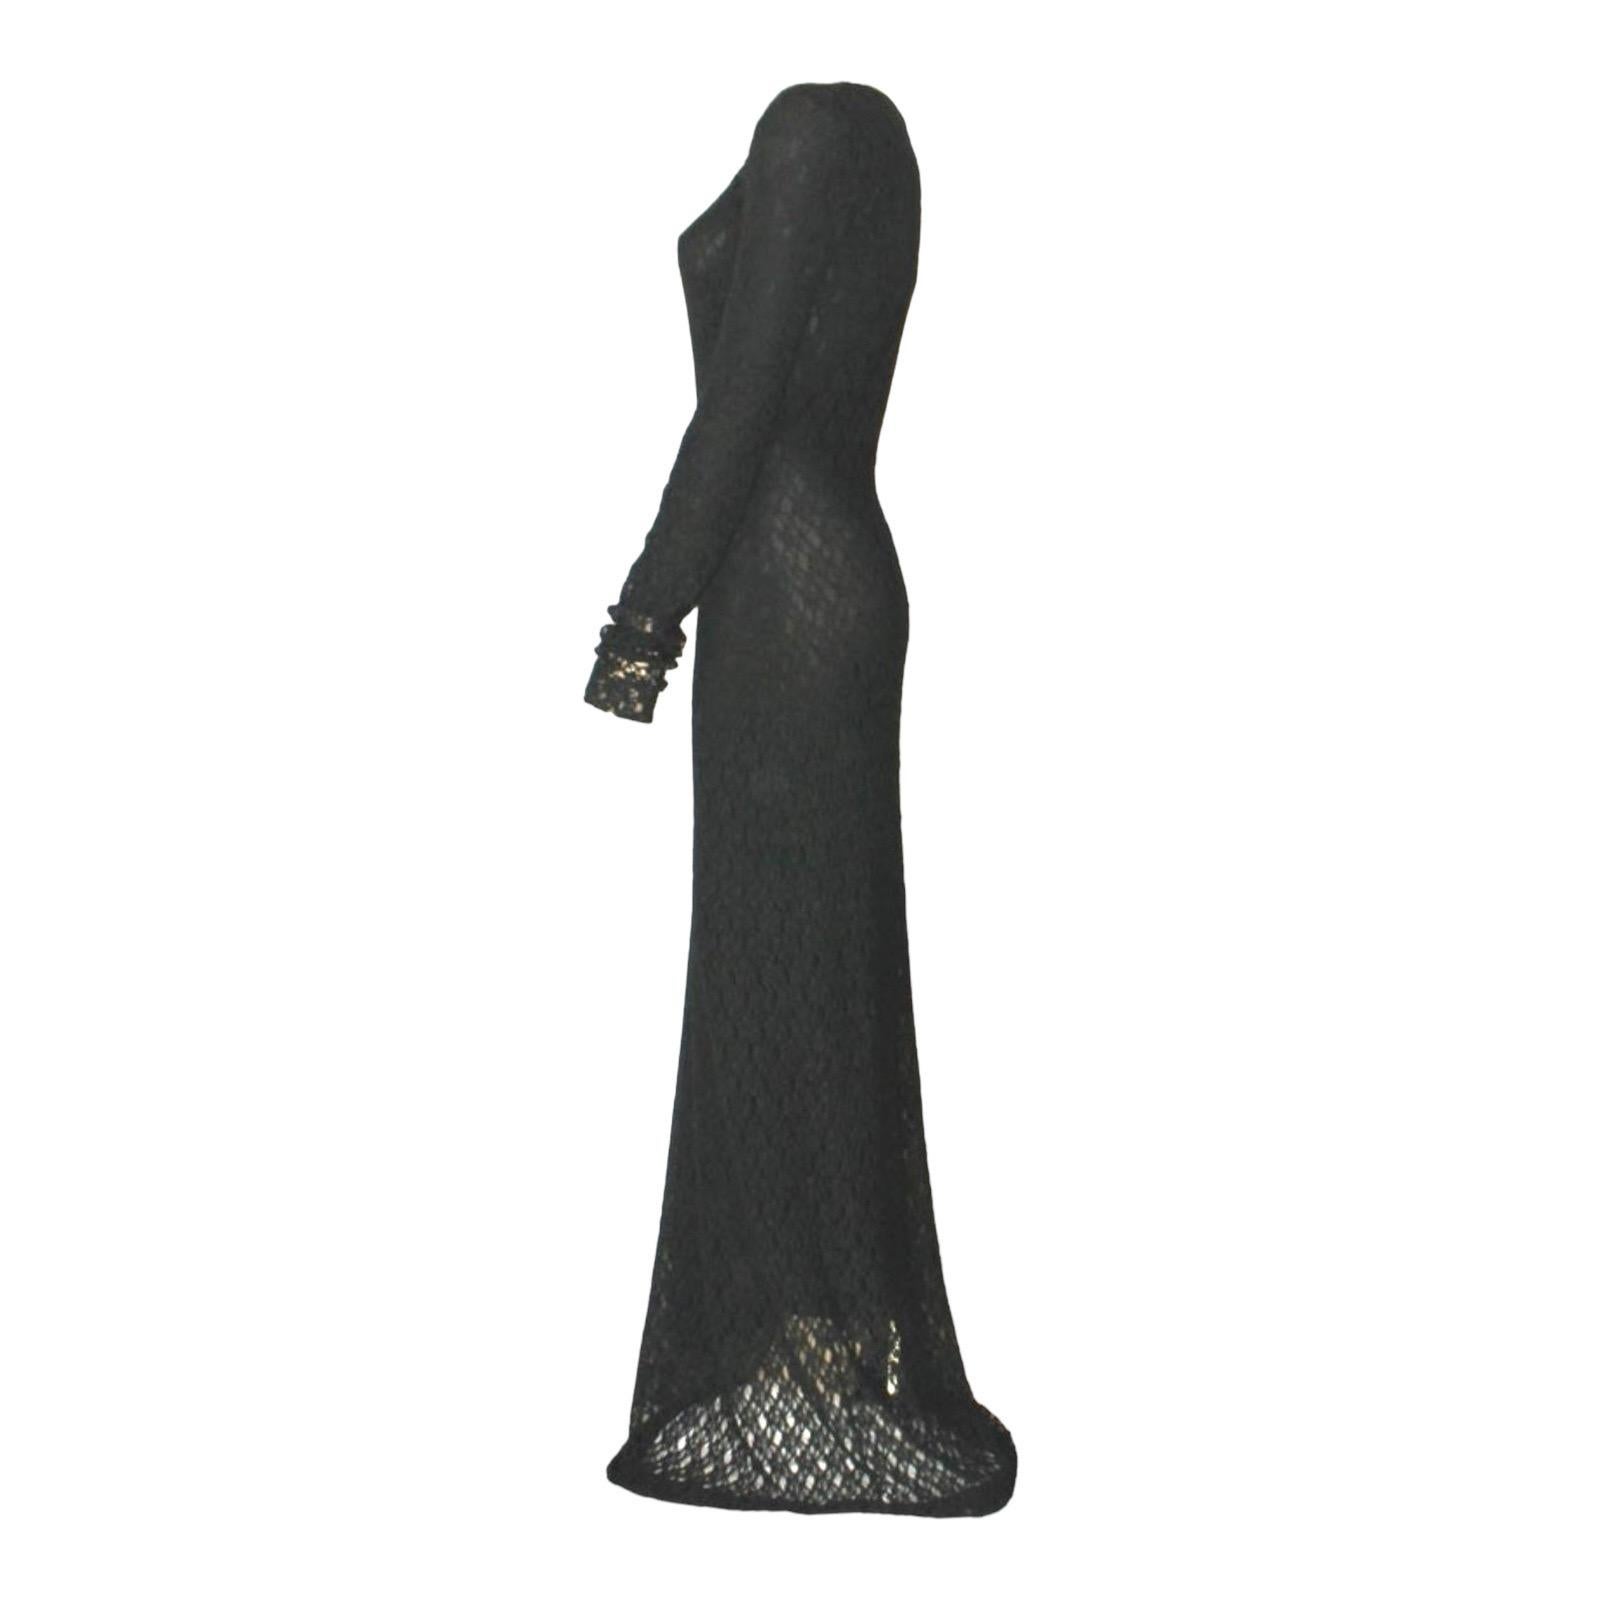 Une superbe robe de soirée signée Dolce & Gabbana
Cette robe date du début des années 1990
Cette magnifique robe est confectionnée en tricot crocheté doux à structure 3D.
La robe est entièrement doublée
(La doublure peut être enlevée si nécessaire